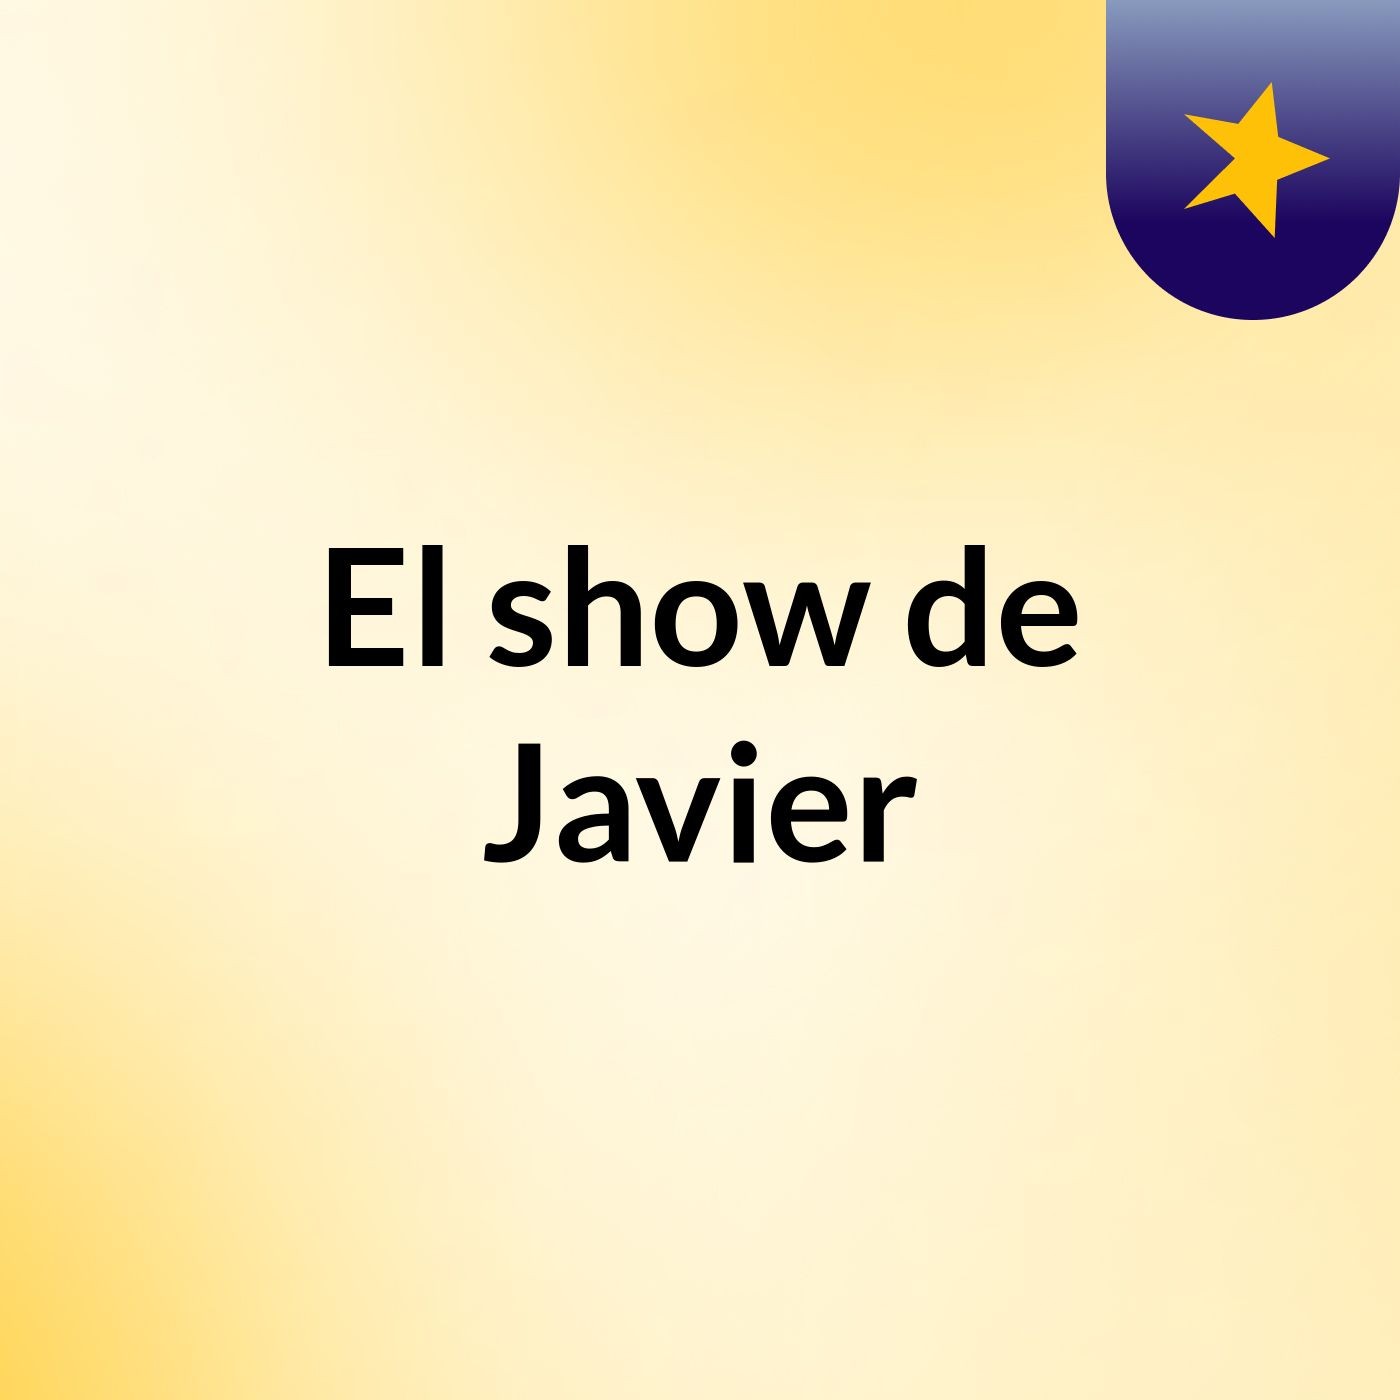 El show de Javier